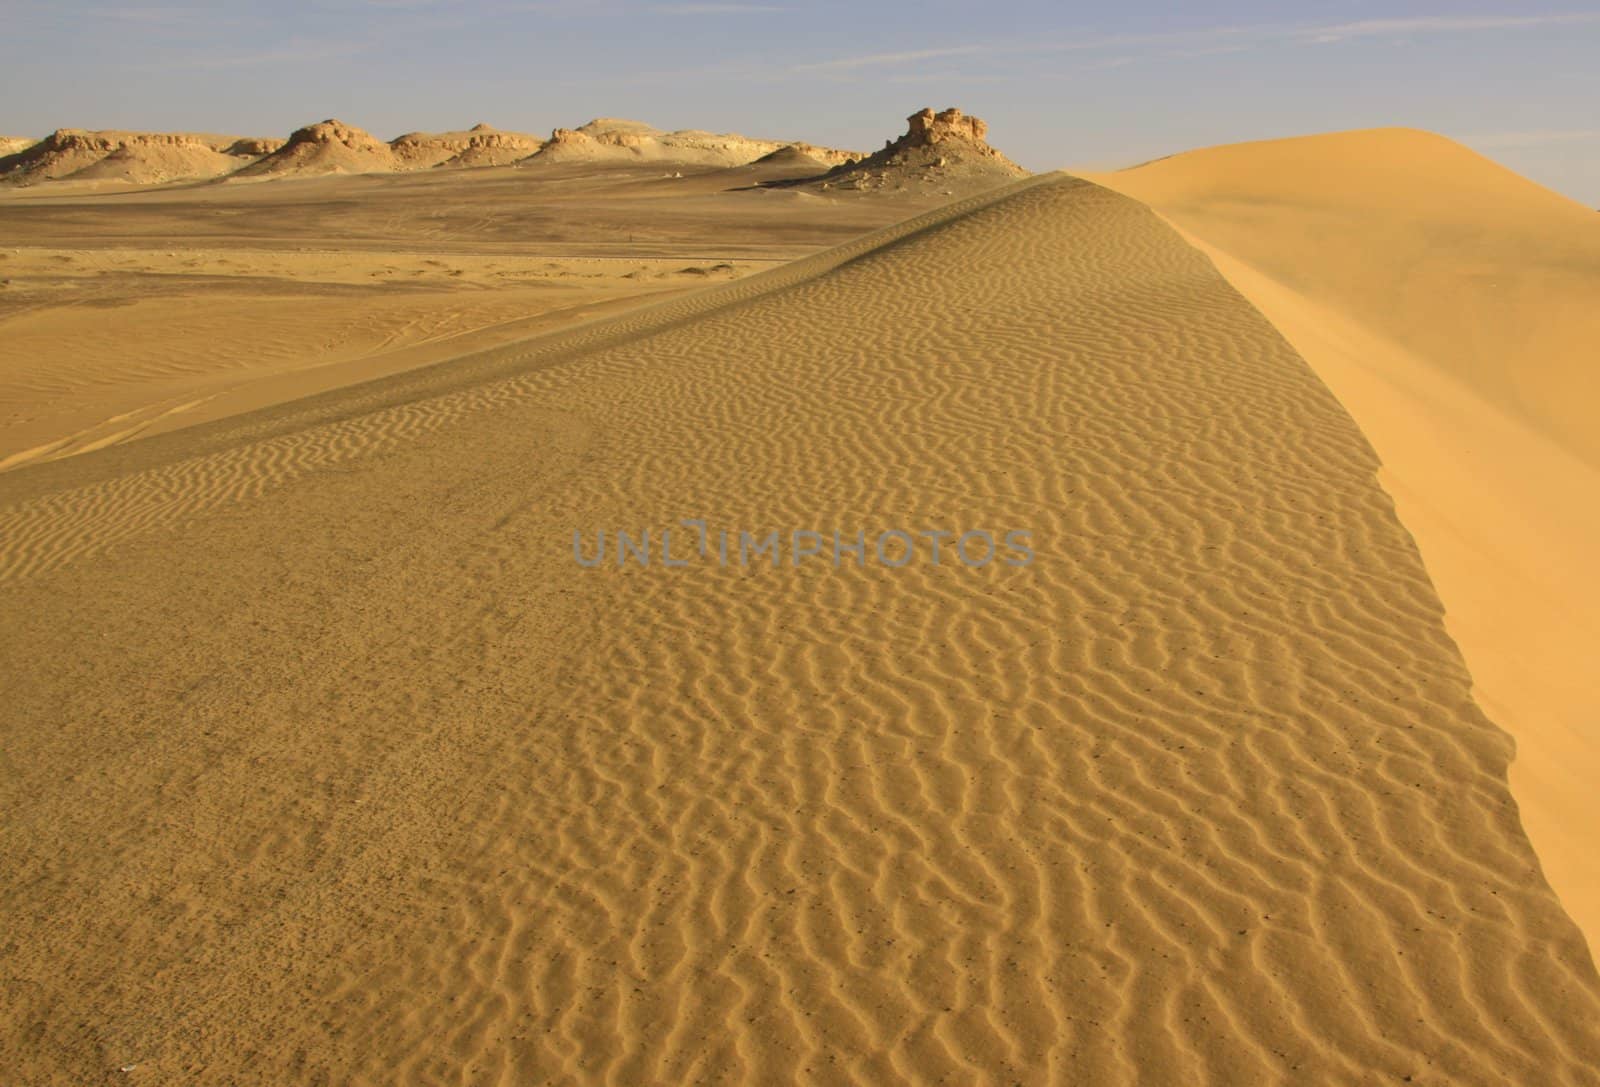 Sand dunes in Lybian desert,Egypt by jnerad